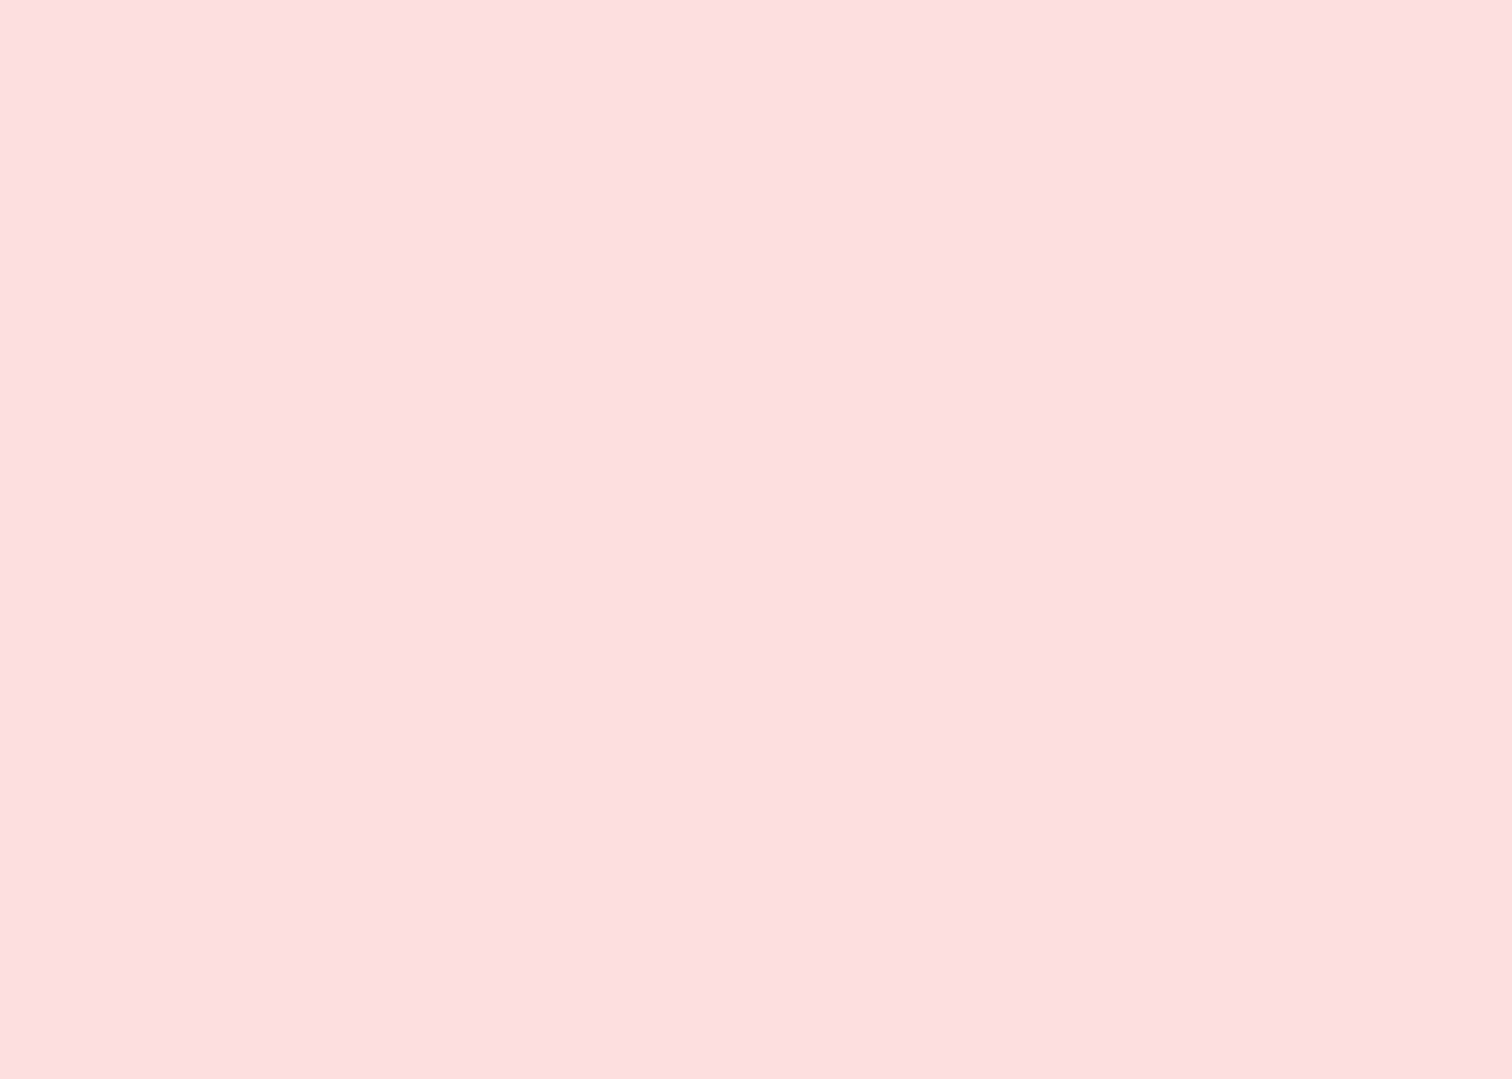 Solid Pink Baggrund 1512 X 1079